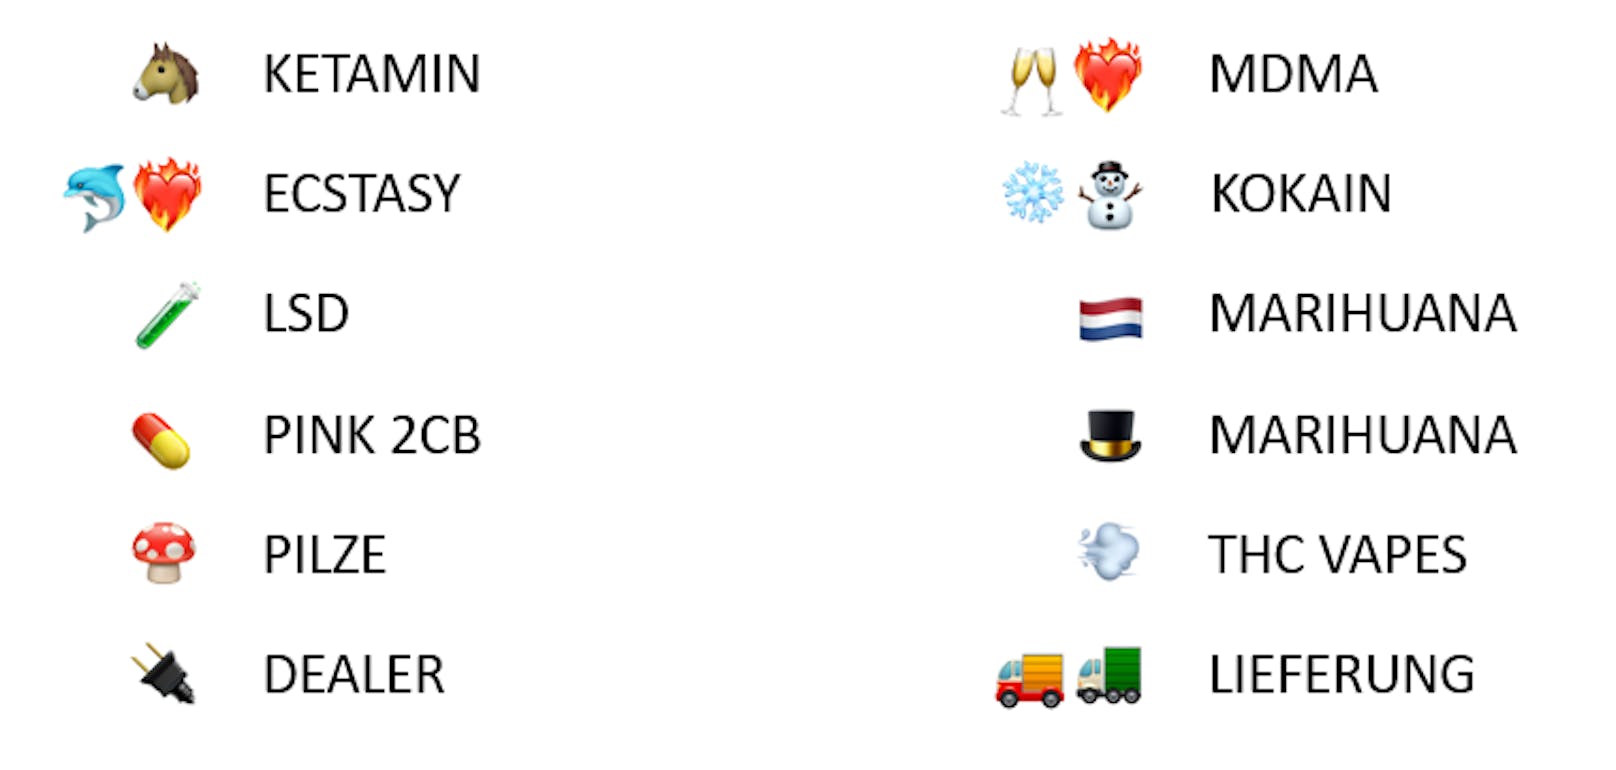 Drogen à la carte: Diese Emoji-Kombinationen wurden für die Bestellungen verwendet.